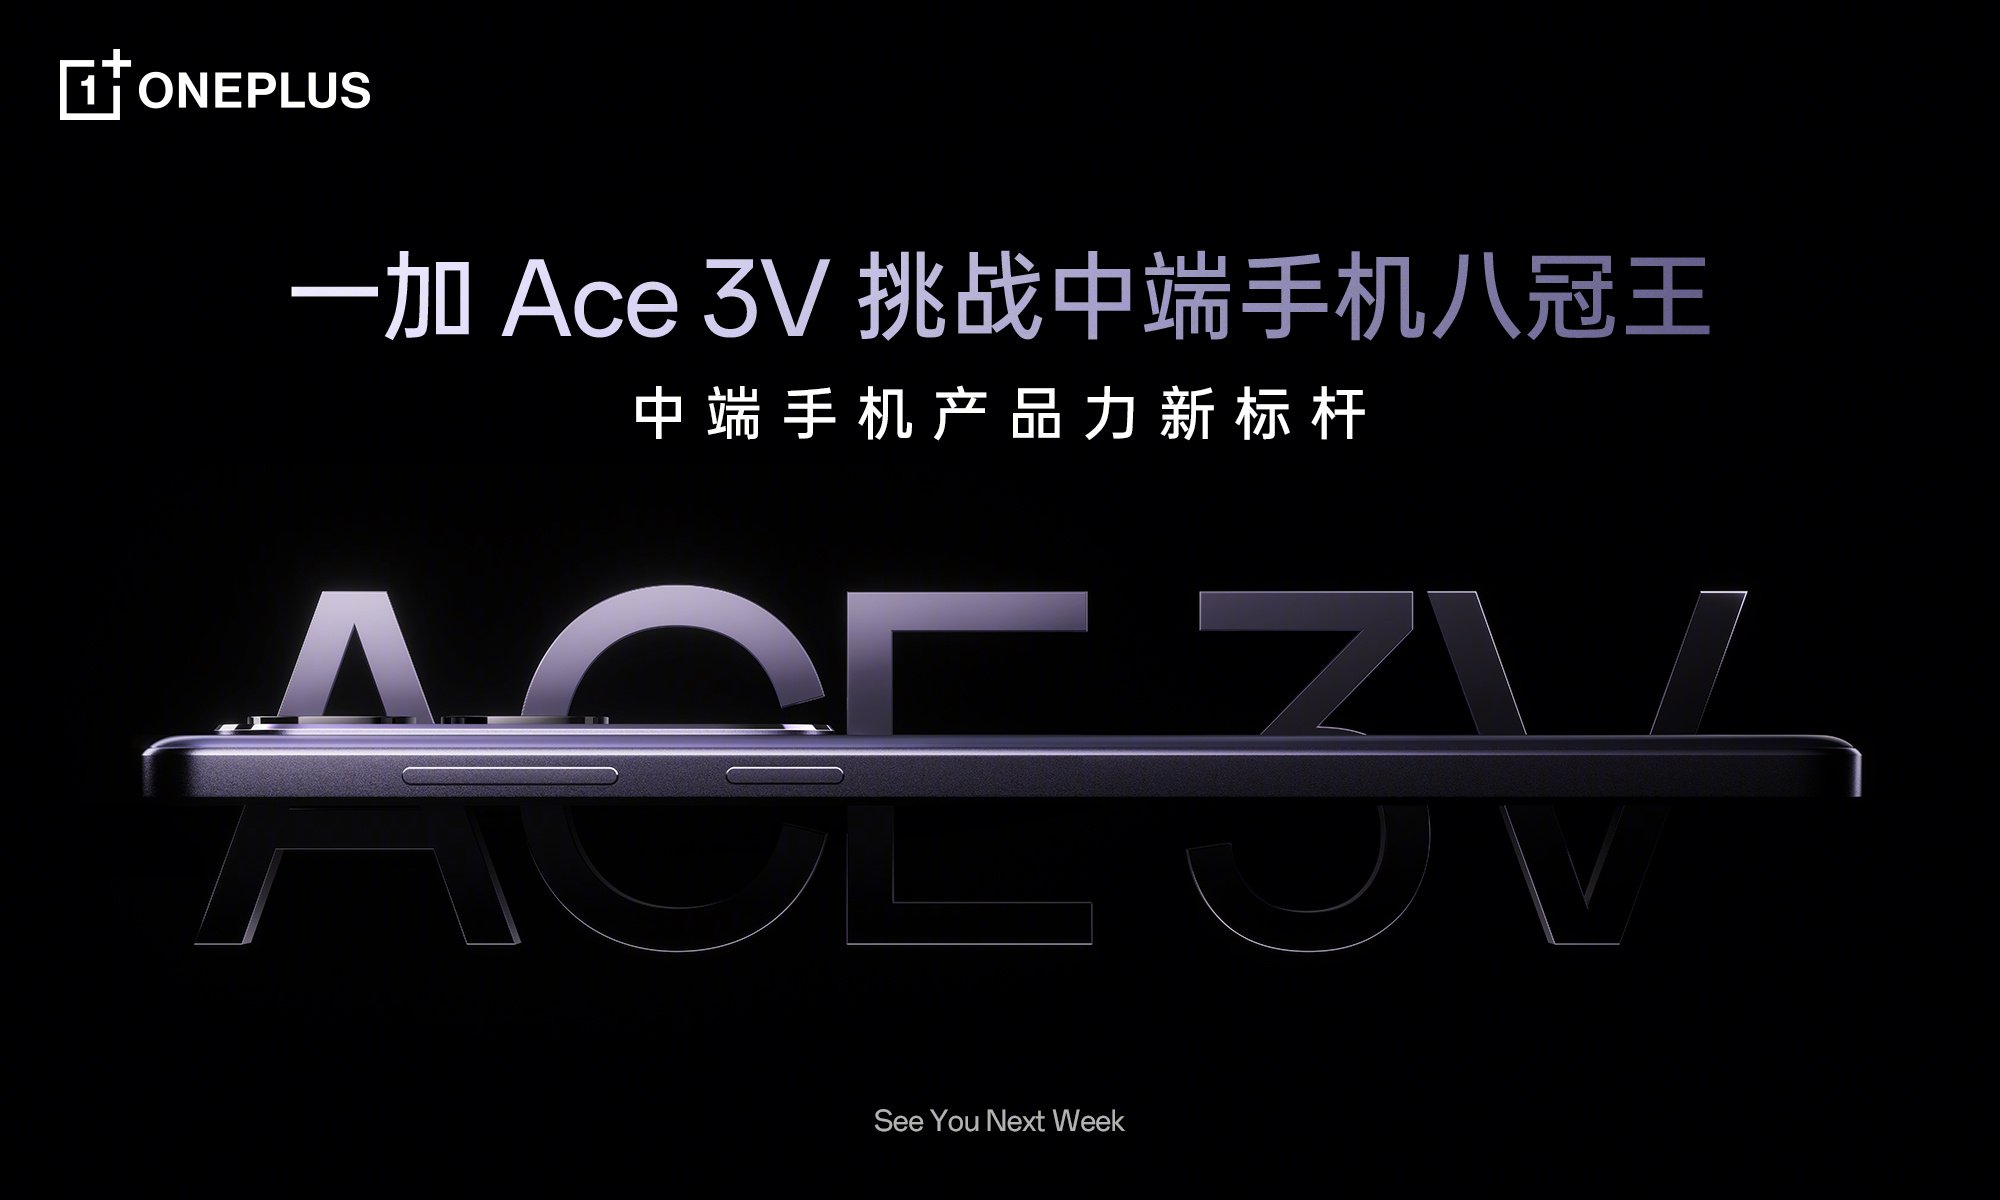 Le OnePlus Ace 3V, équipé d'une puce Snapdragon 7+ Gen 3, sera lancé la semaine prochaine.